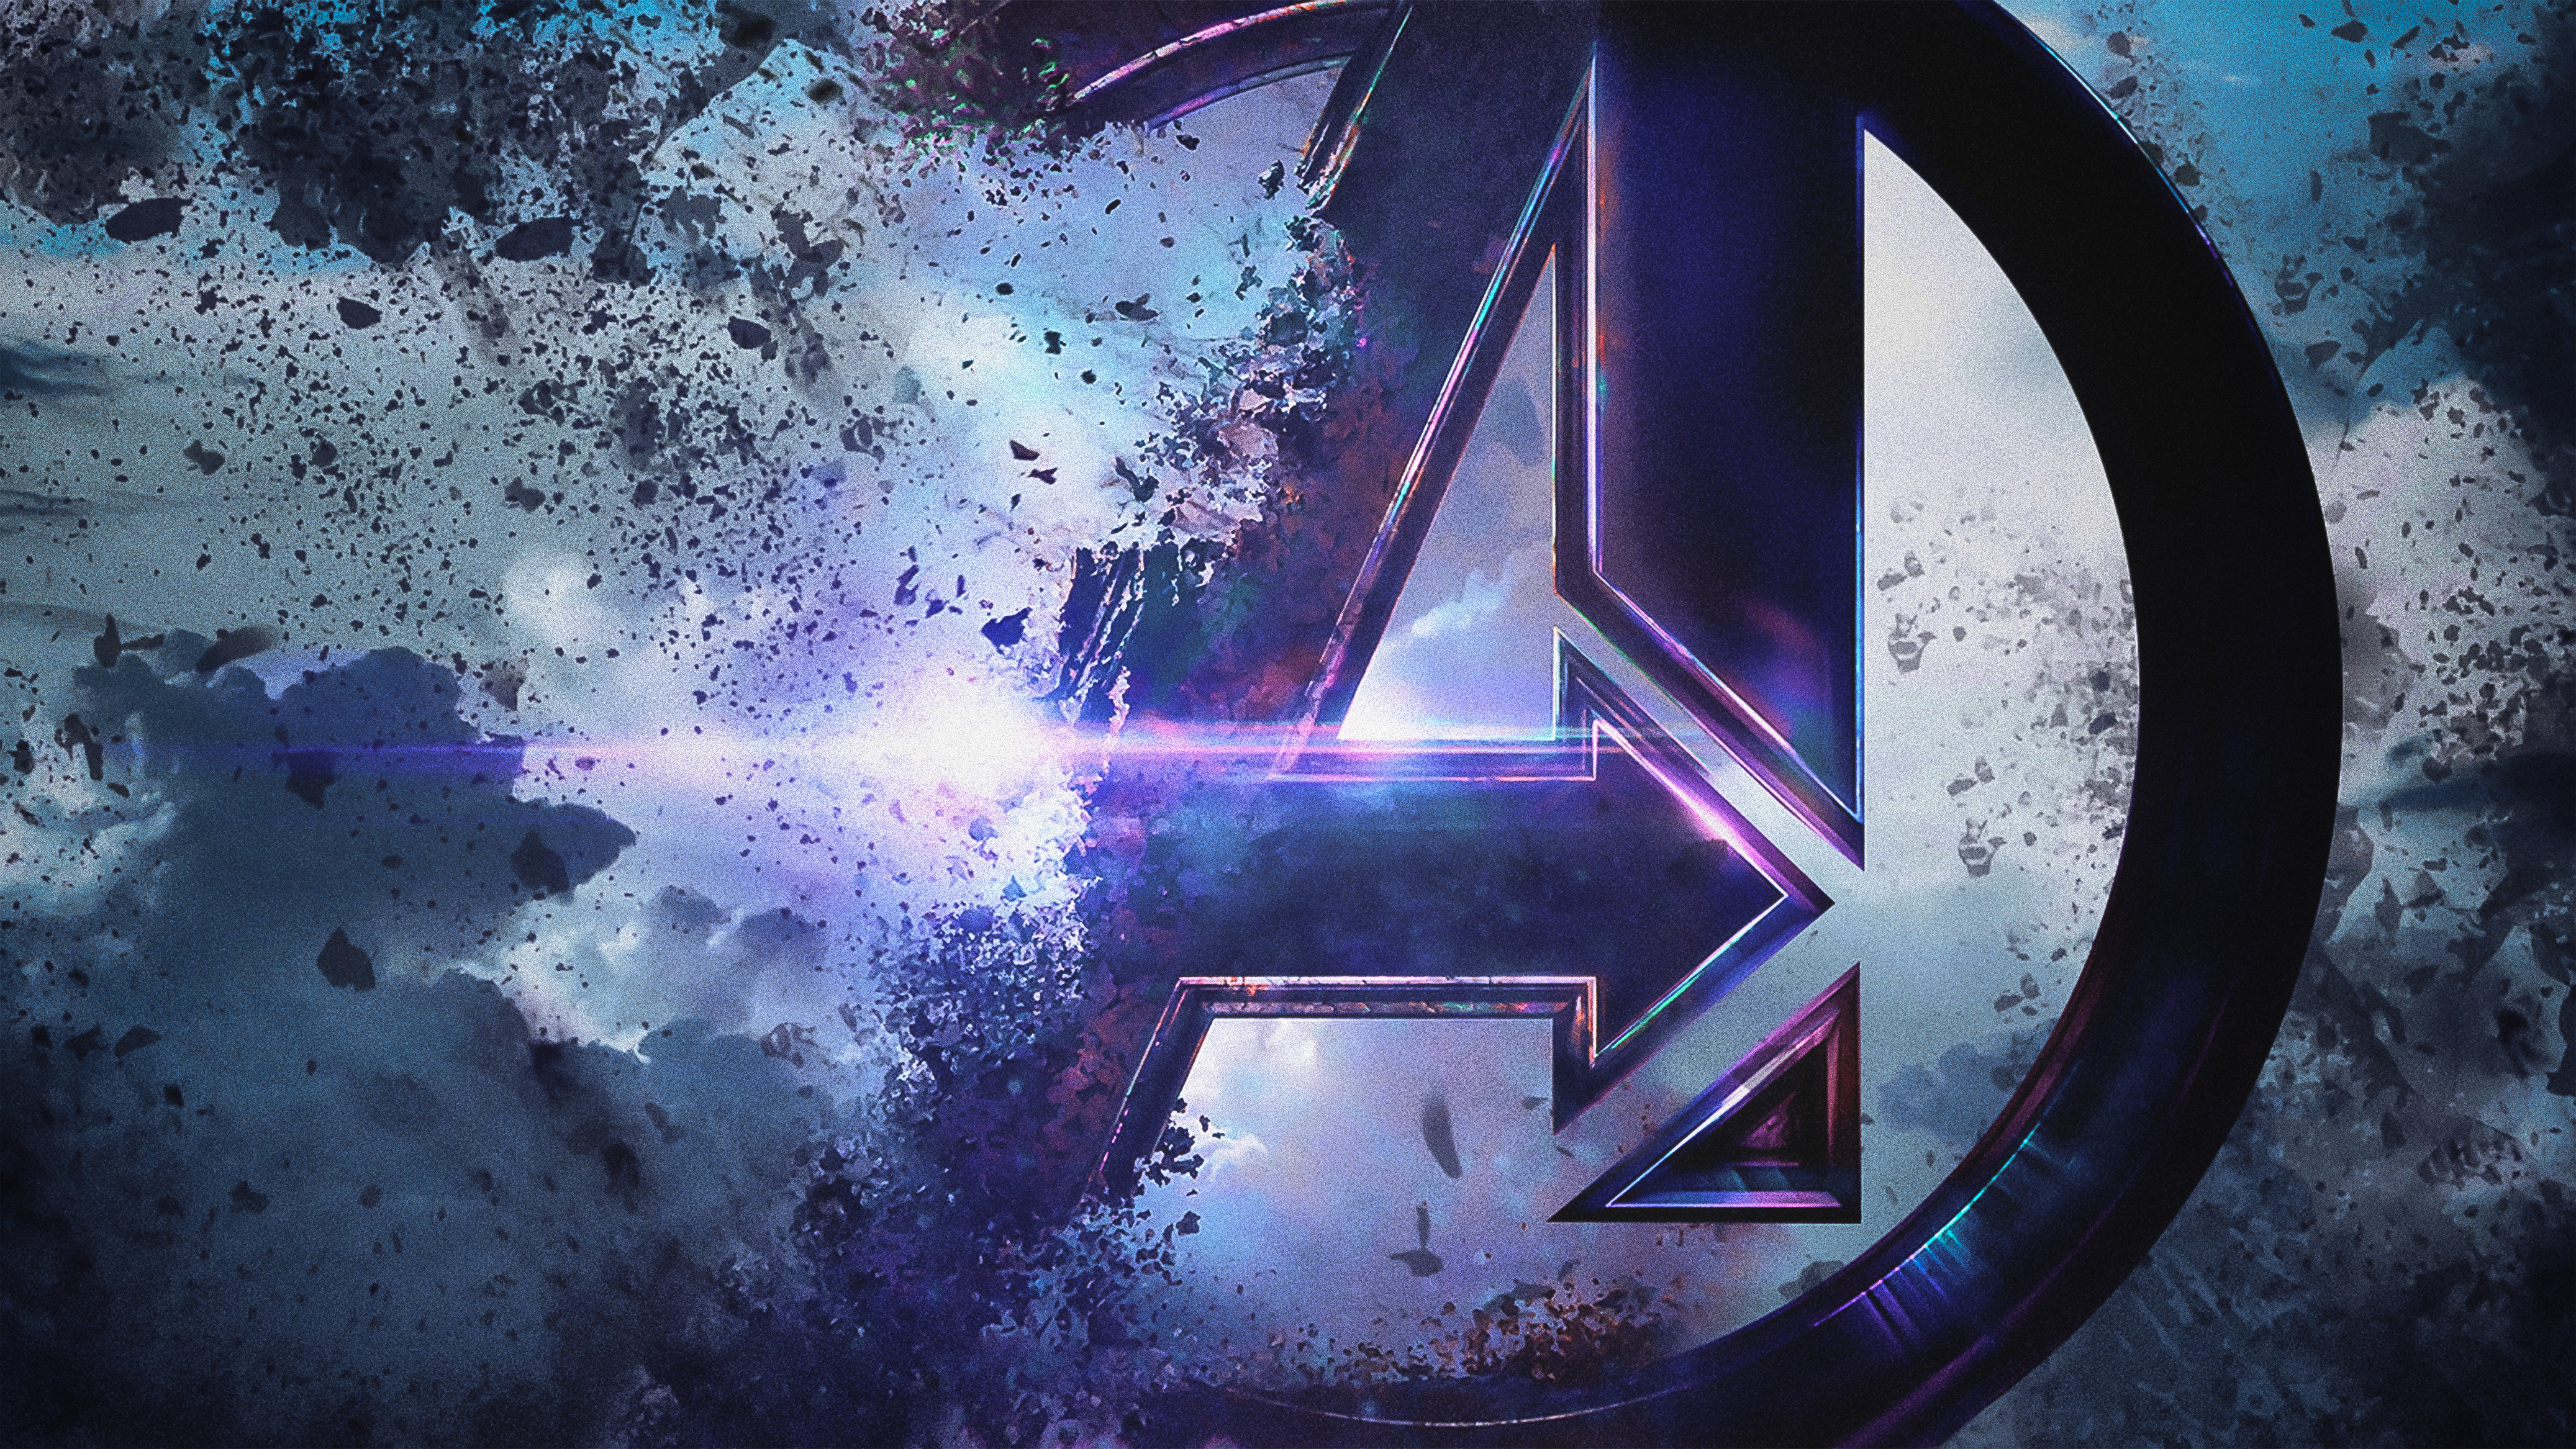 Avengers Endgame 4k Ultra HD Wallpaper